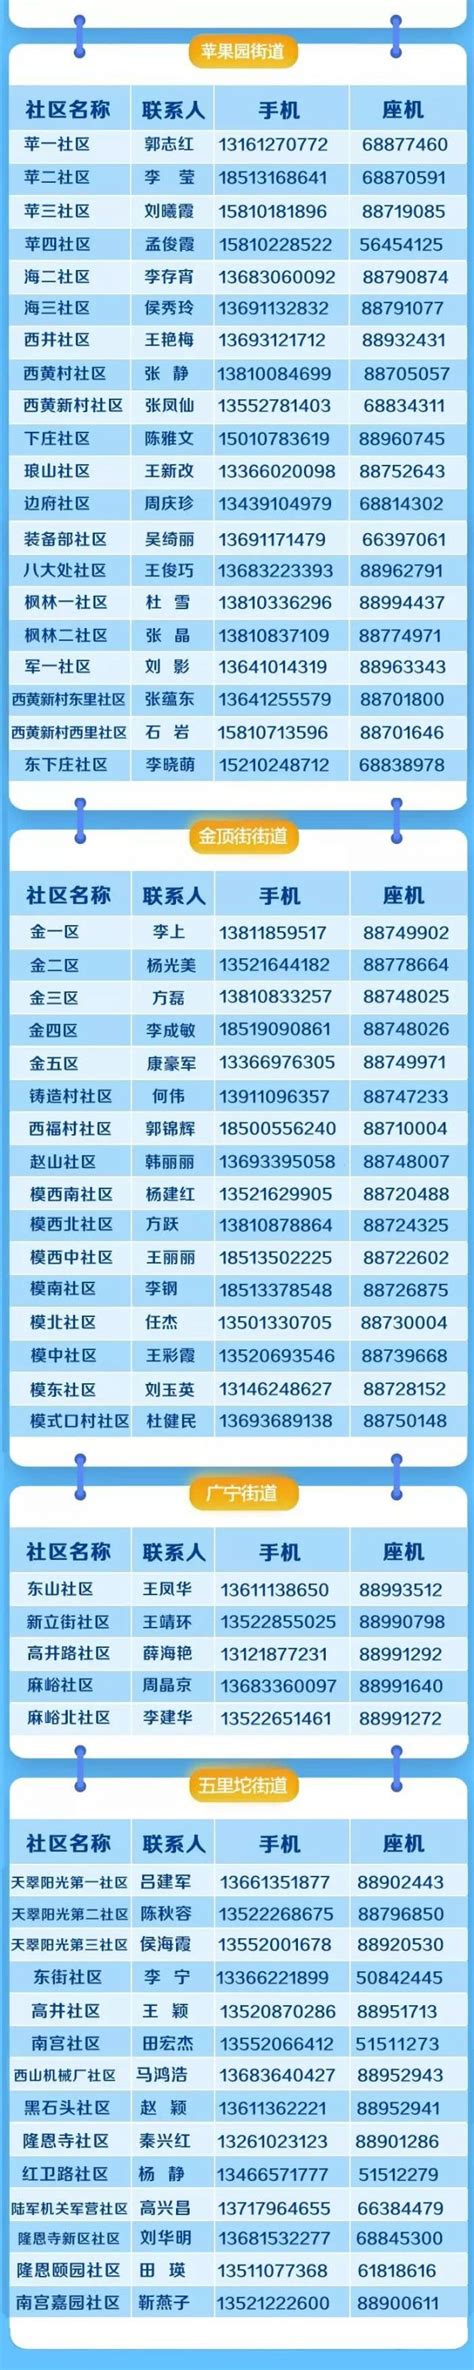 北京石景山区居住证办理地点(窗口地址+联系电话) - 北京慢慢看